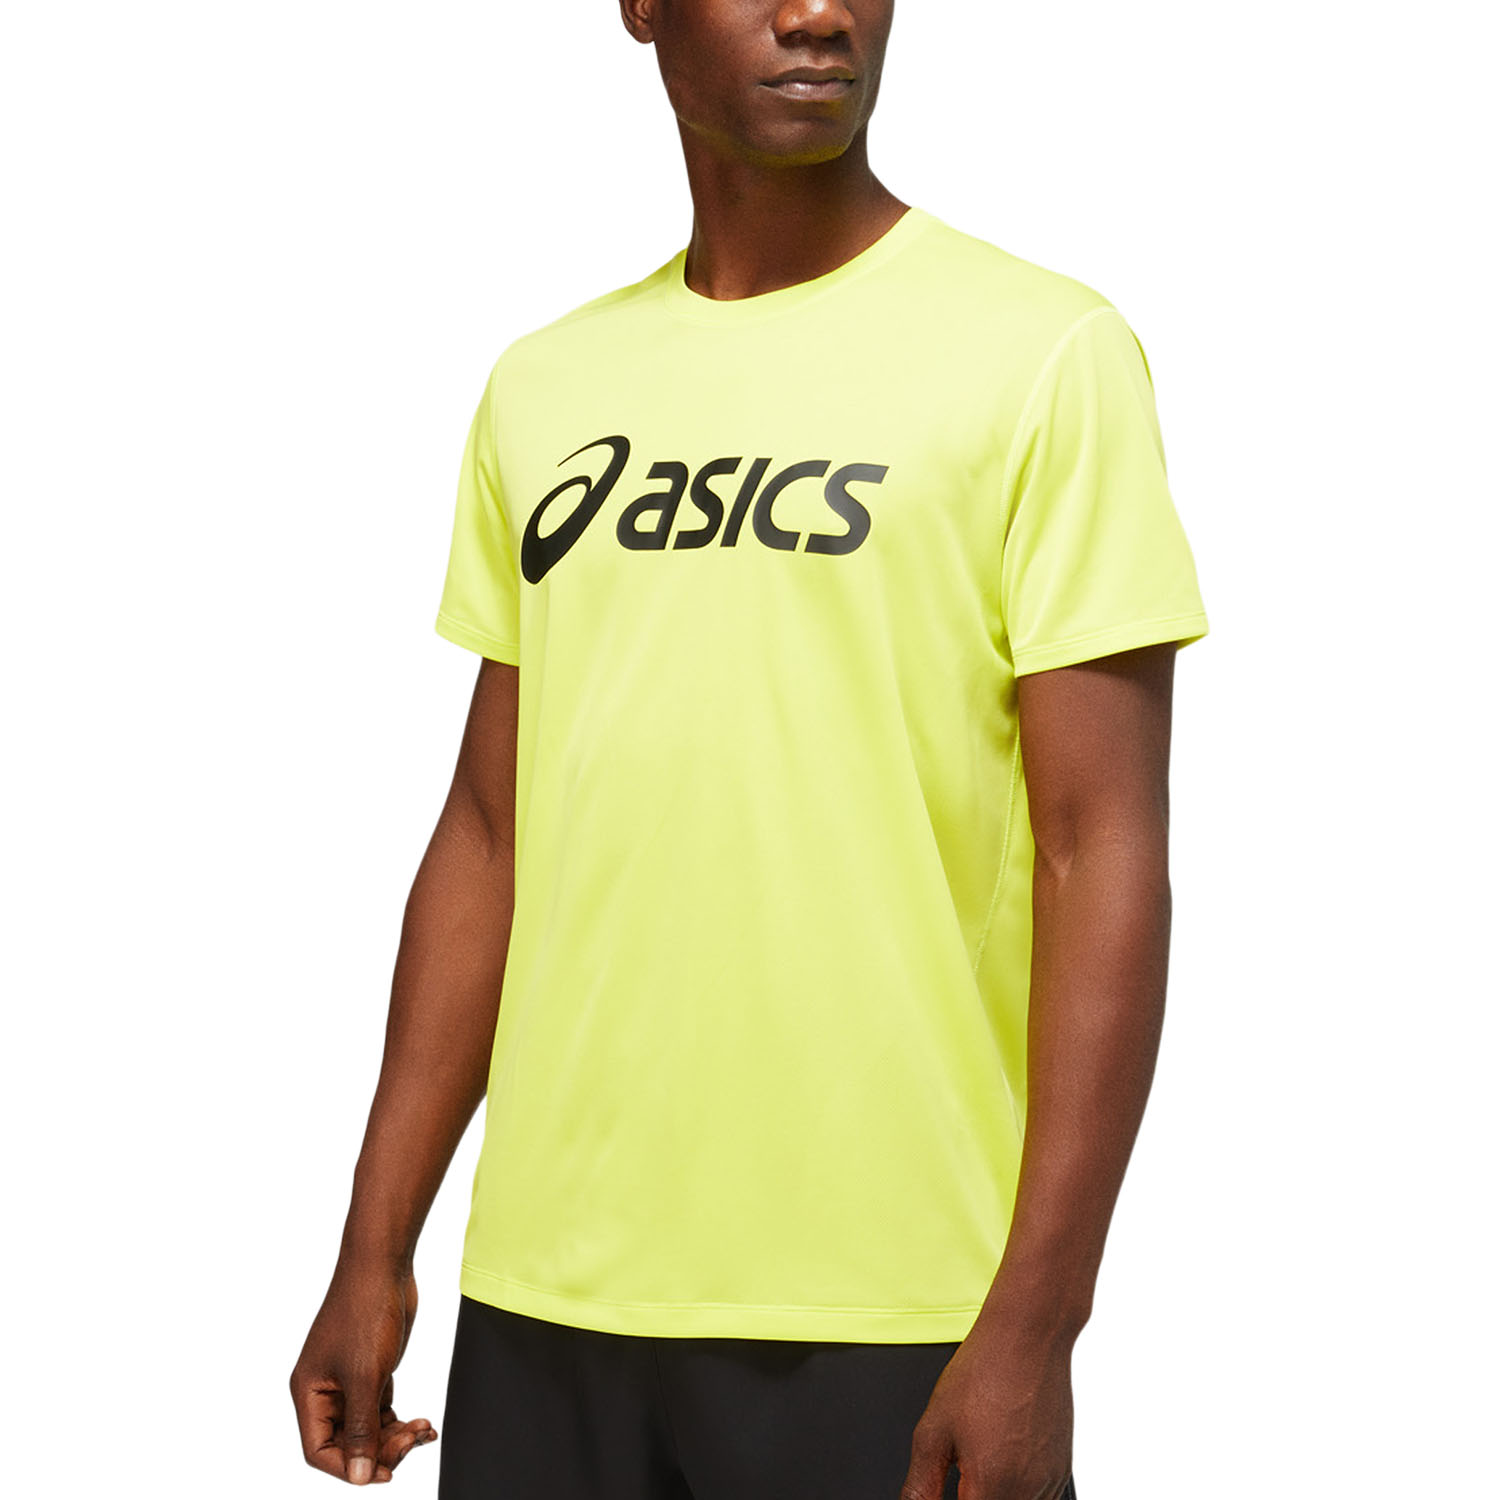 Asics Camiseta Running Hombre - Suzu/Performance Black